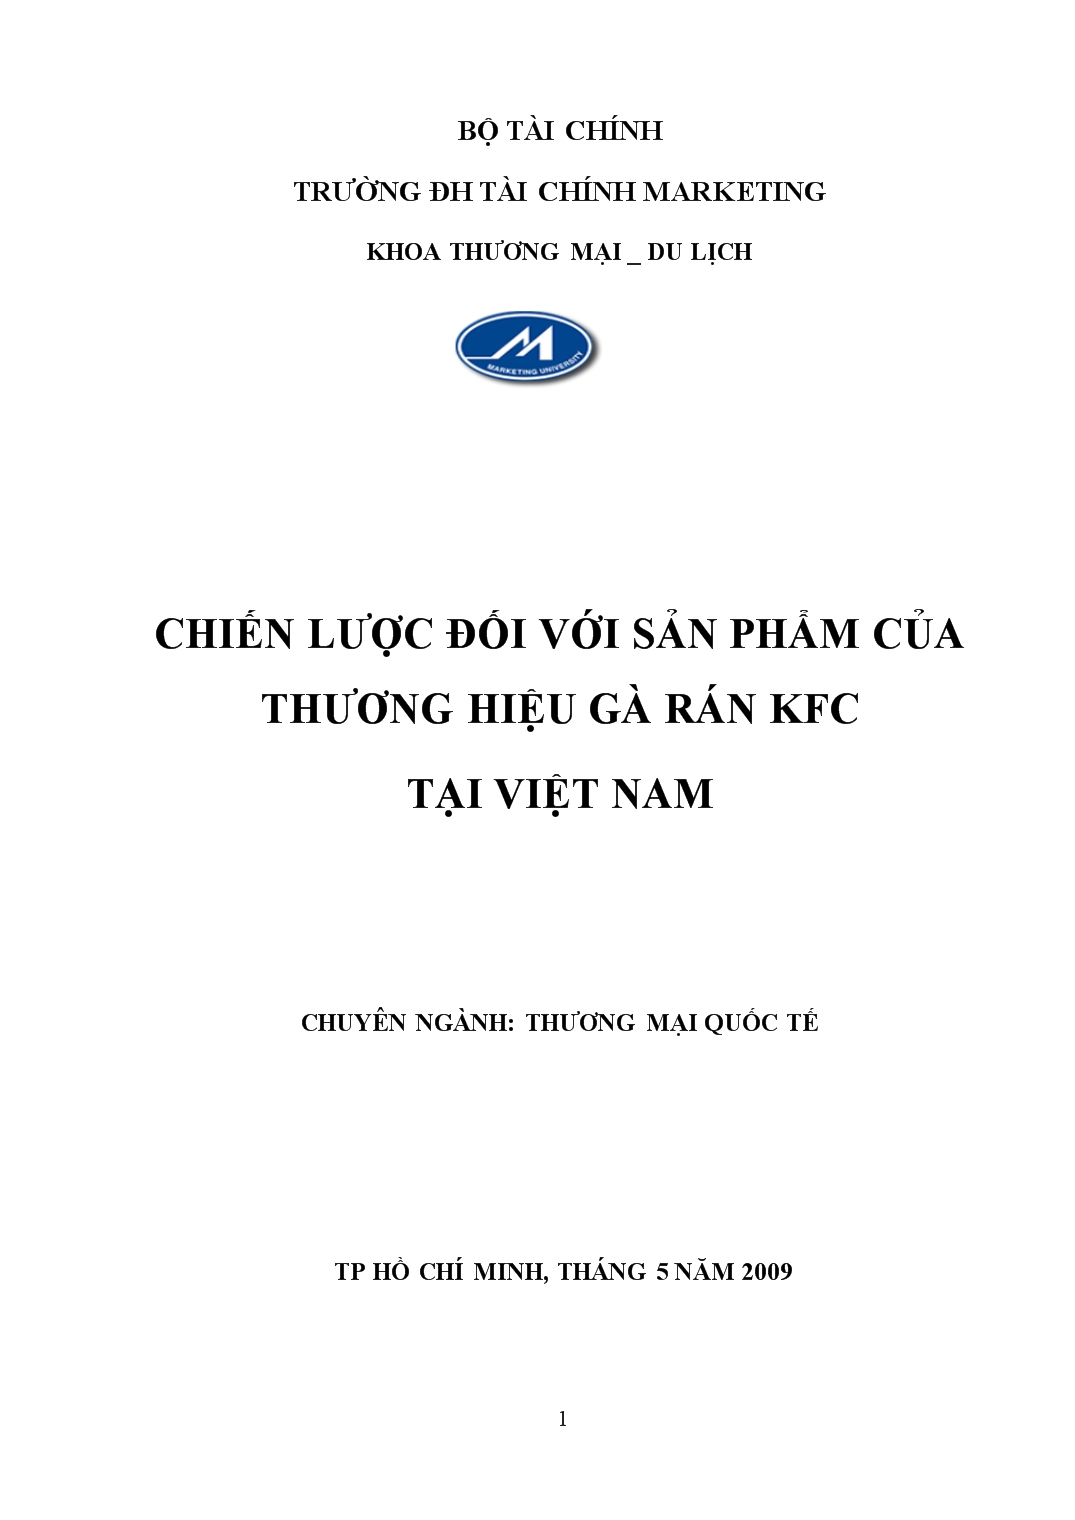 Đề tài Chiến lược đối với sản phẩm của thương hiệu gà rán kfc tại Việt Nam trang 1